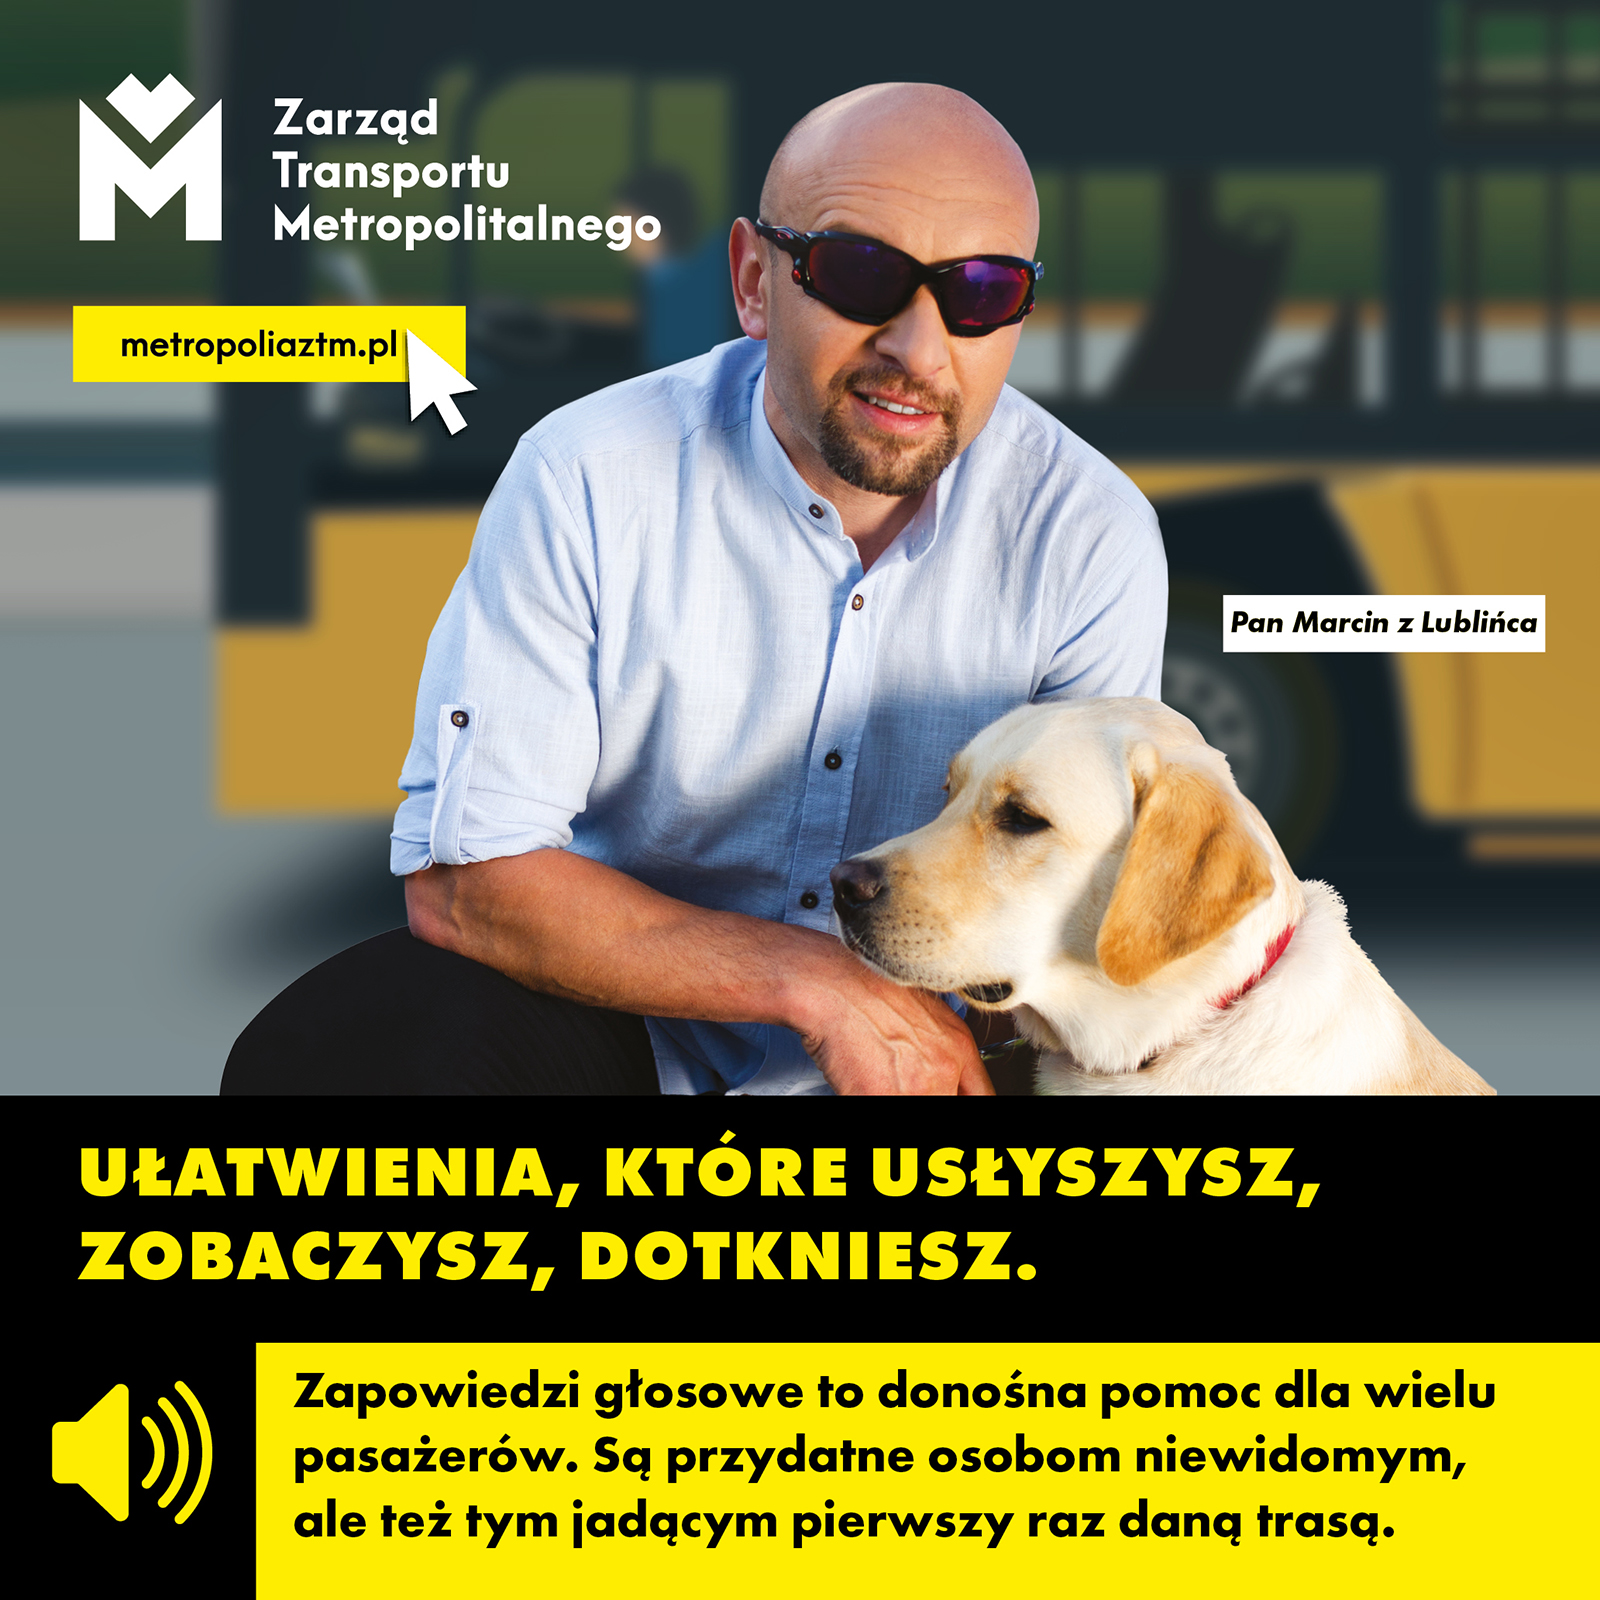 Plakat informacyjny kampanii ZTM